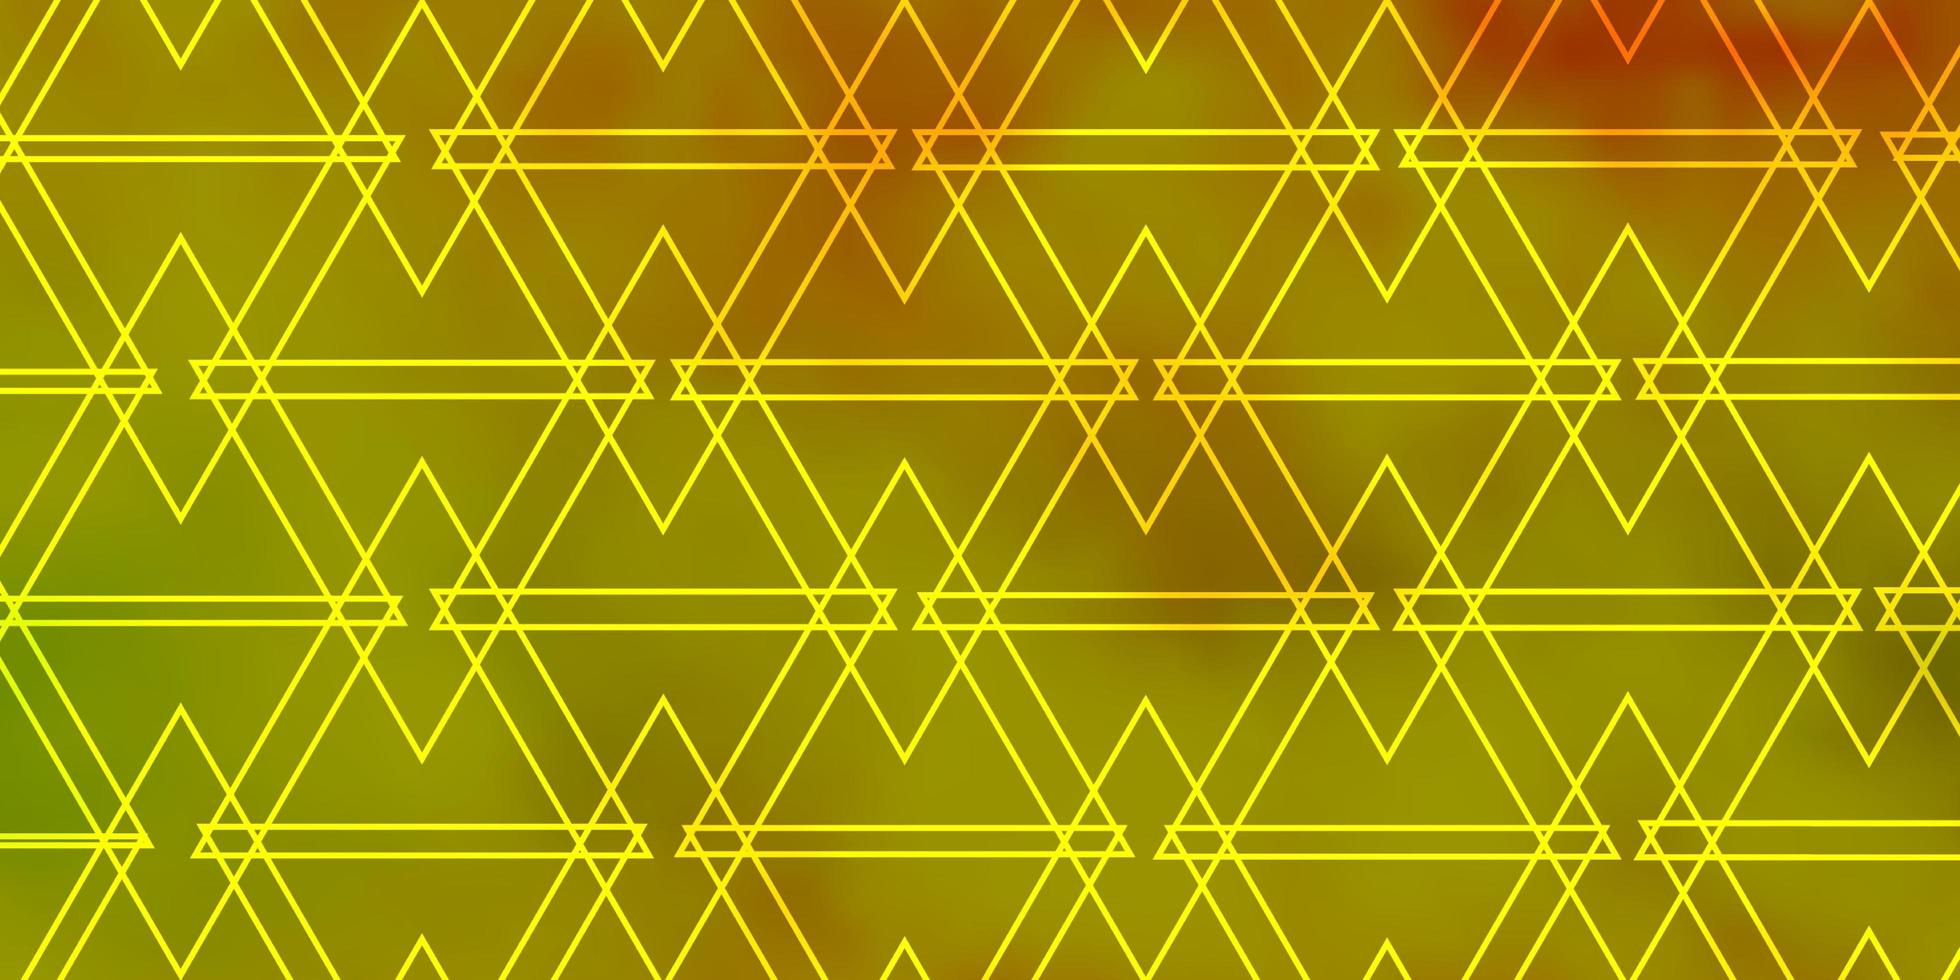 ljusgrön, gul vektorstruktur med triangulär stil. vektor